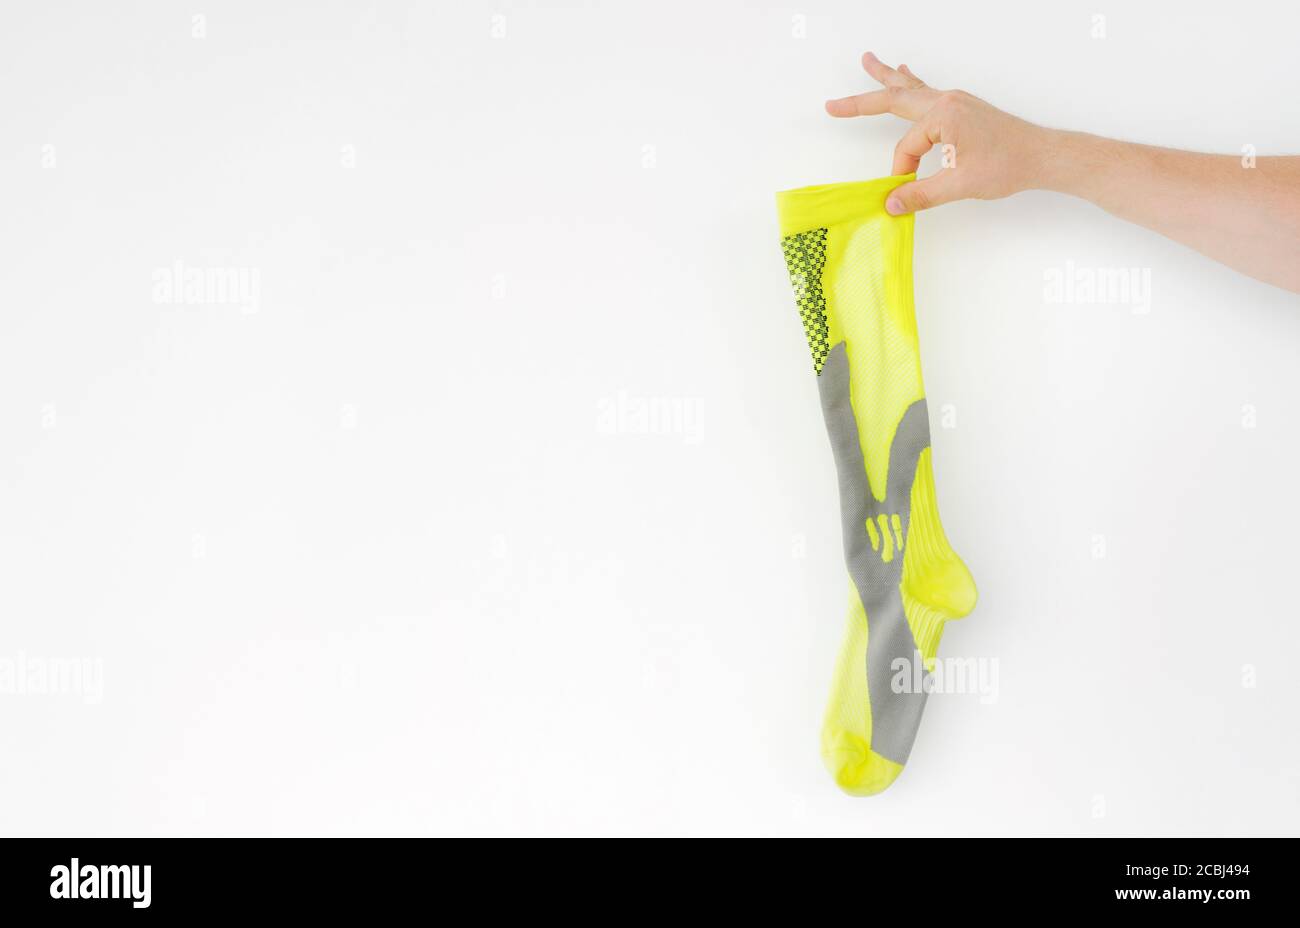 Stinkende gelbe Laufsocke in der Hand auf hellem Hintergrund Stockfoto